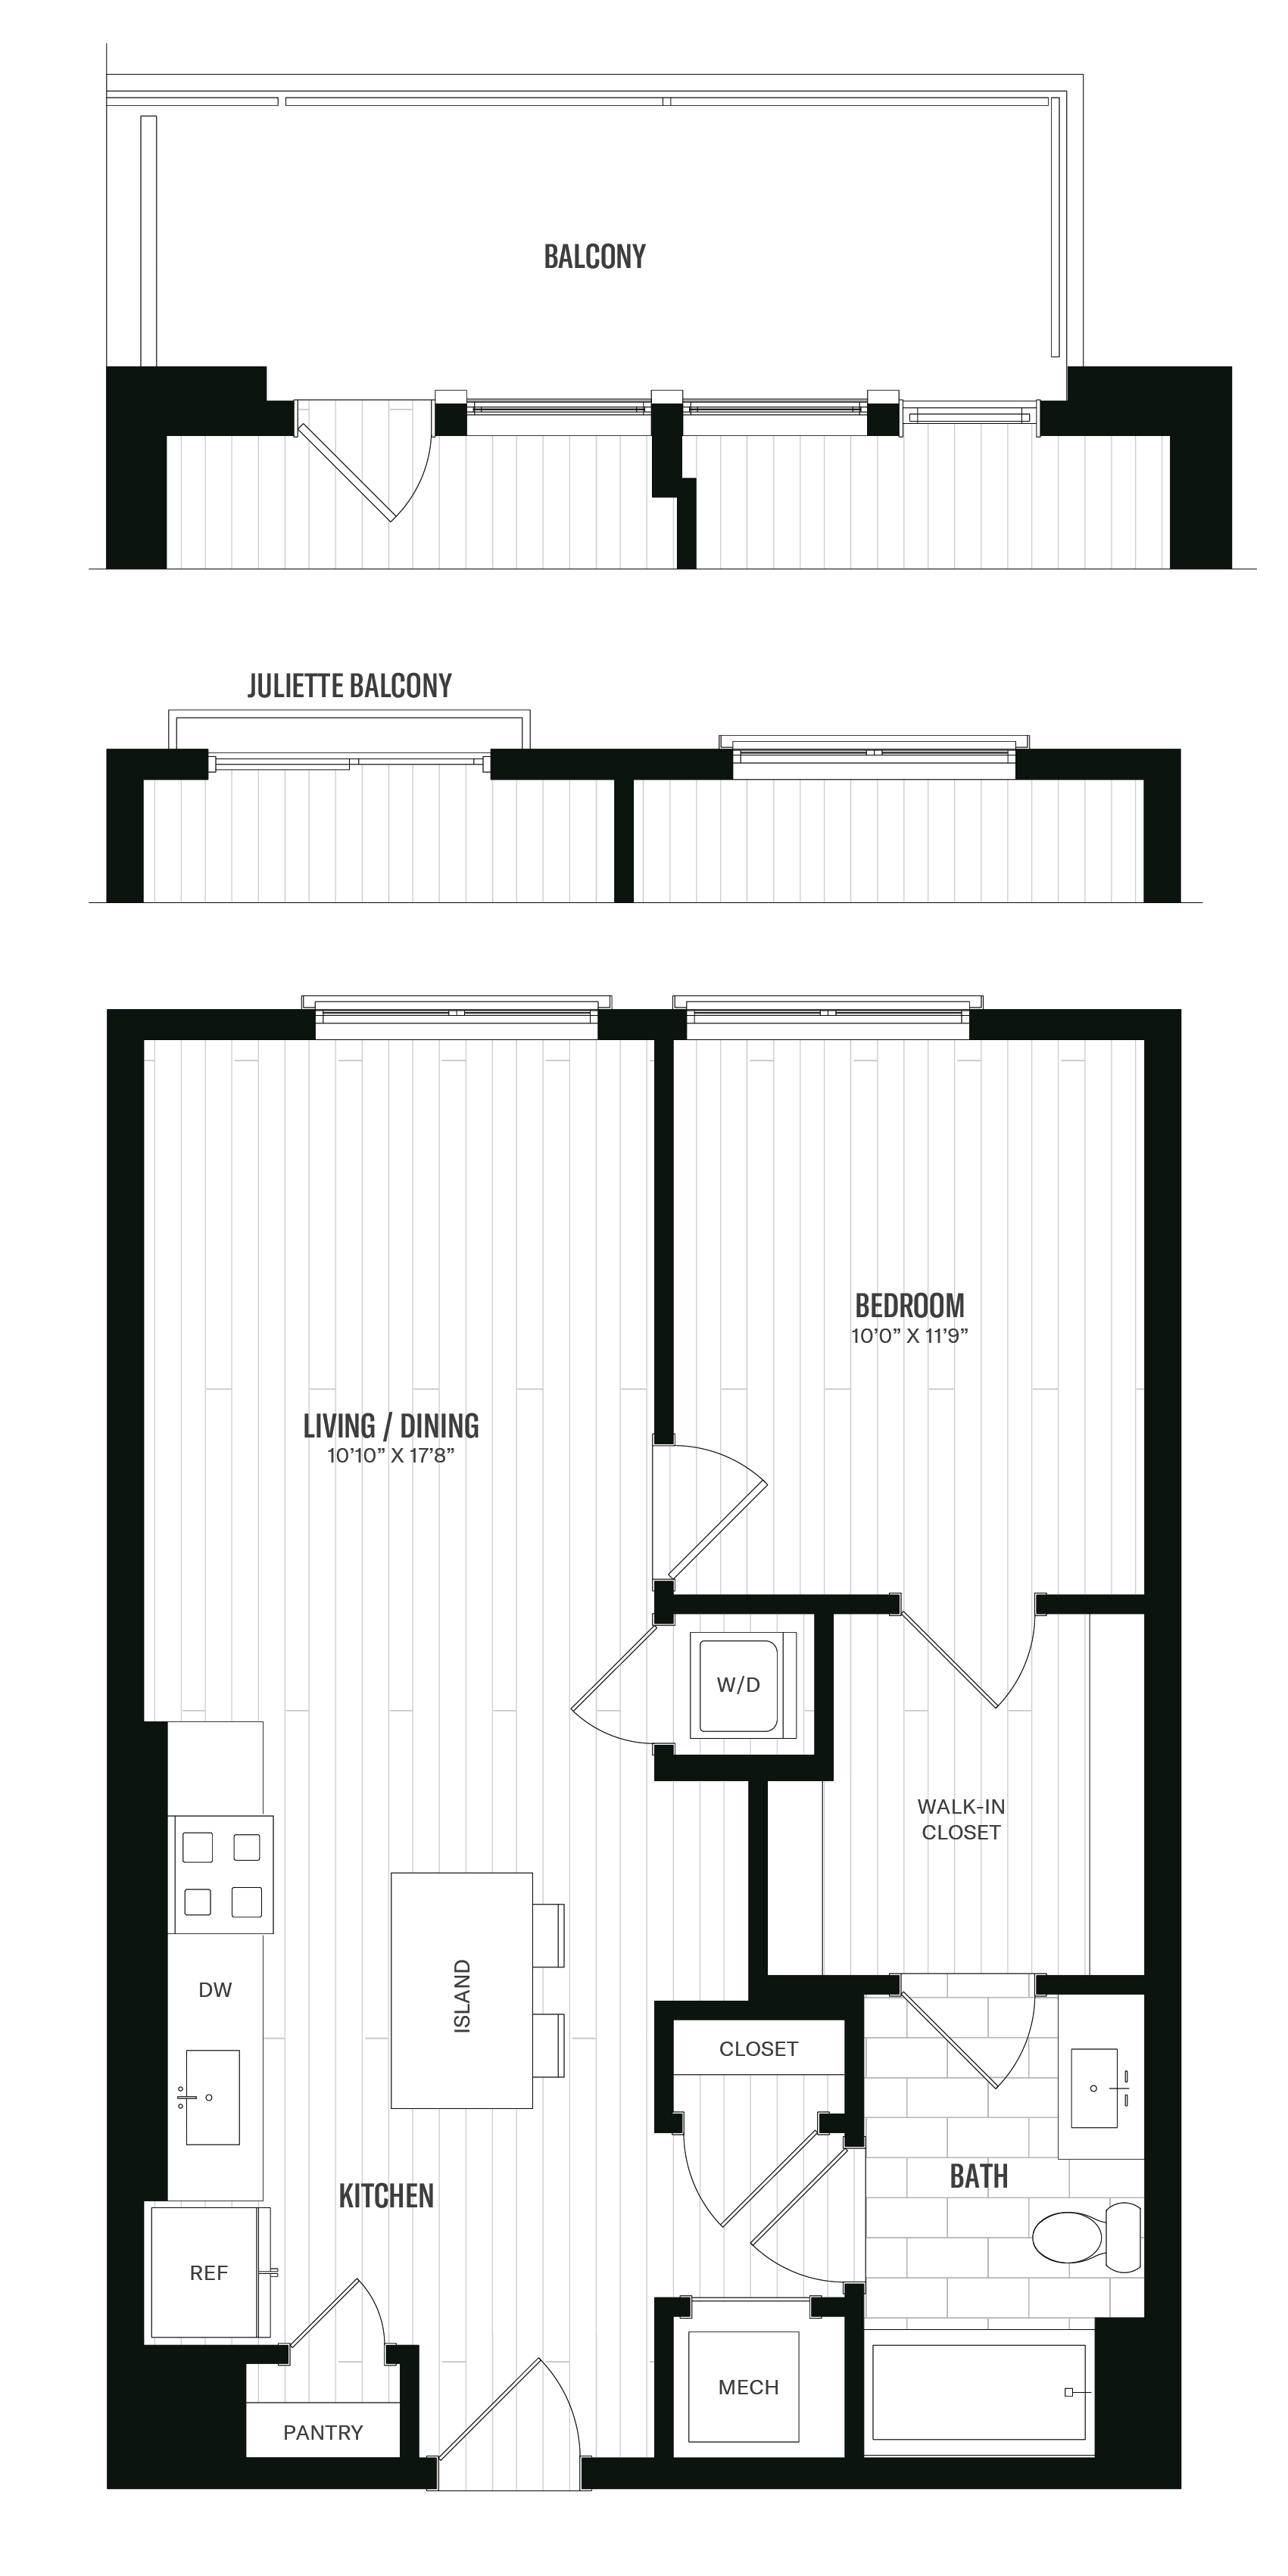 Floorplan image of unit 323